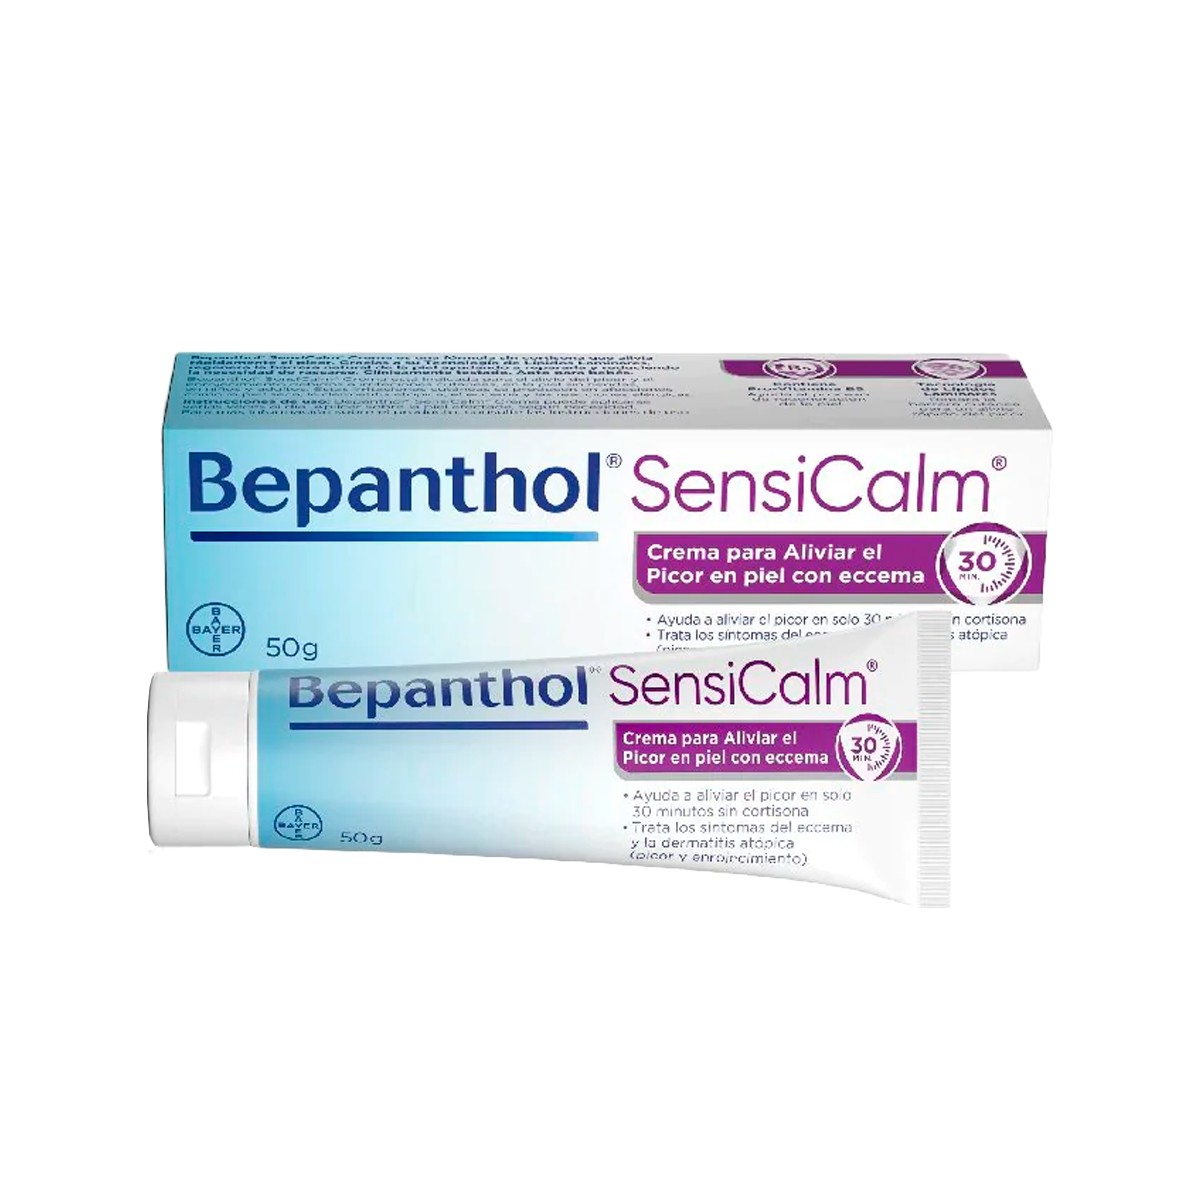 Bepanthol SensiCalm creme, 50 g